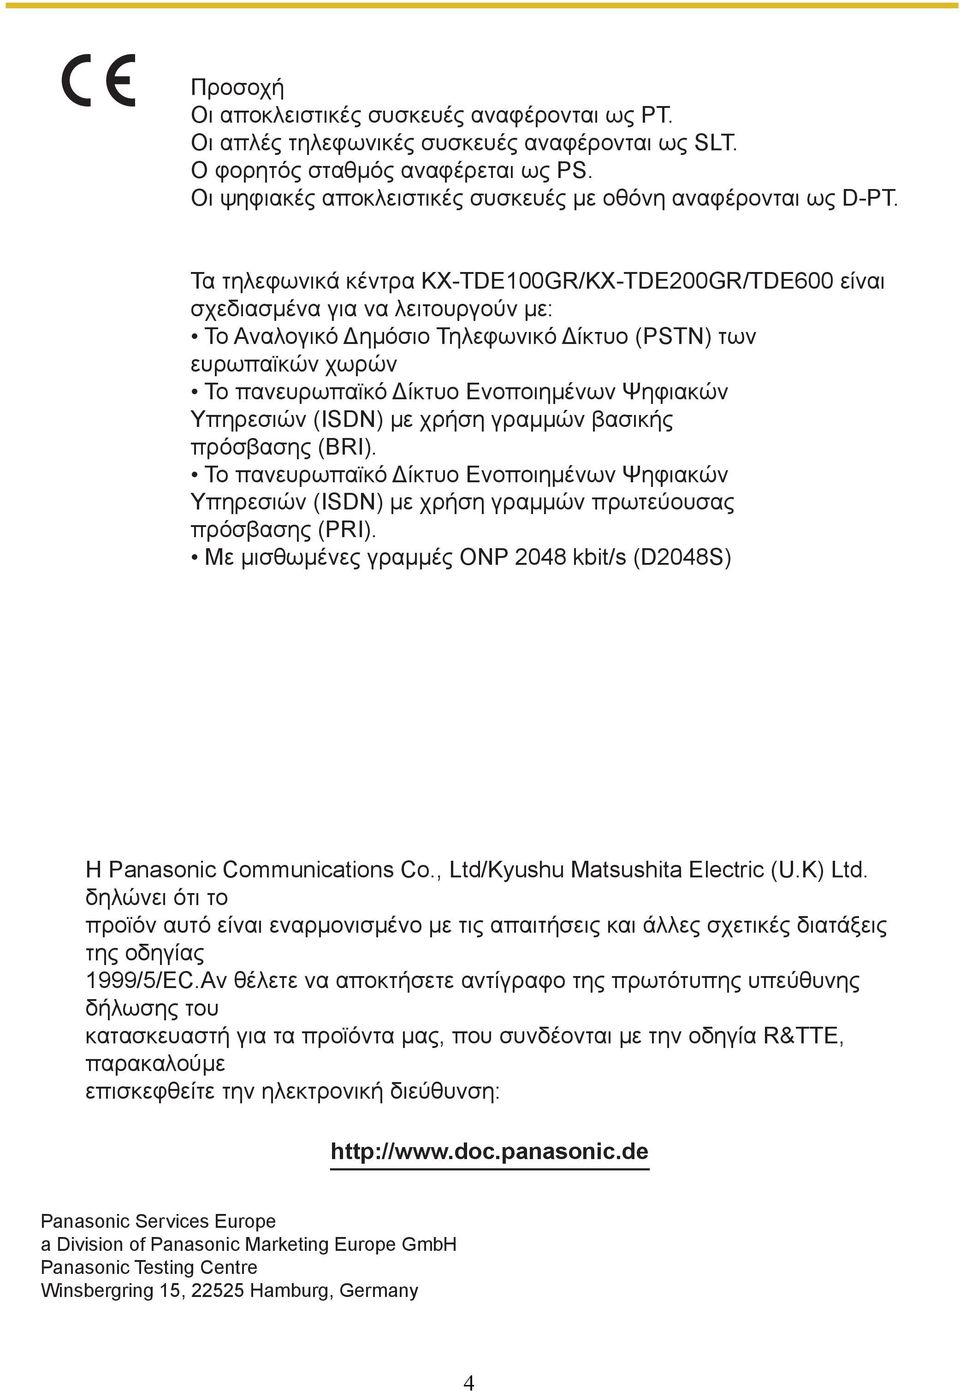 Τα τηλεφωνικά κέντρα KX-TDΕ100GR/KX-TDΕ200GR/TDE600 είναι σχεδιασµένα για να λειτουργούν µε: Το Αναλογικό Δηµόσιο Τηλεφωνικό Δίκτυο (PSTN) των ευρωπαϊκών χωρών Το πανευρωπαϊκό Δίκτυο Ενοποιηµένων